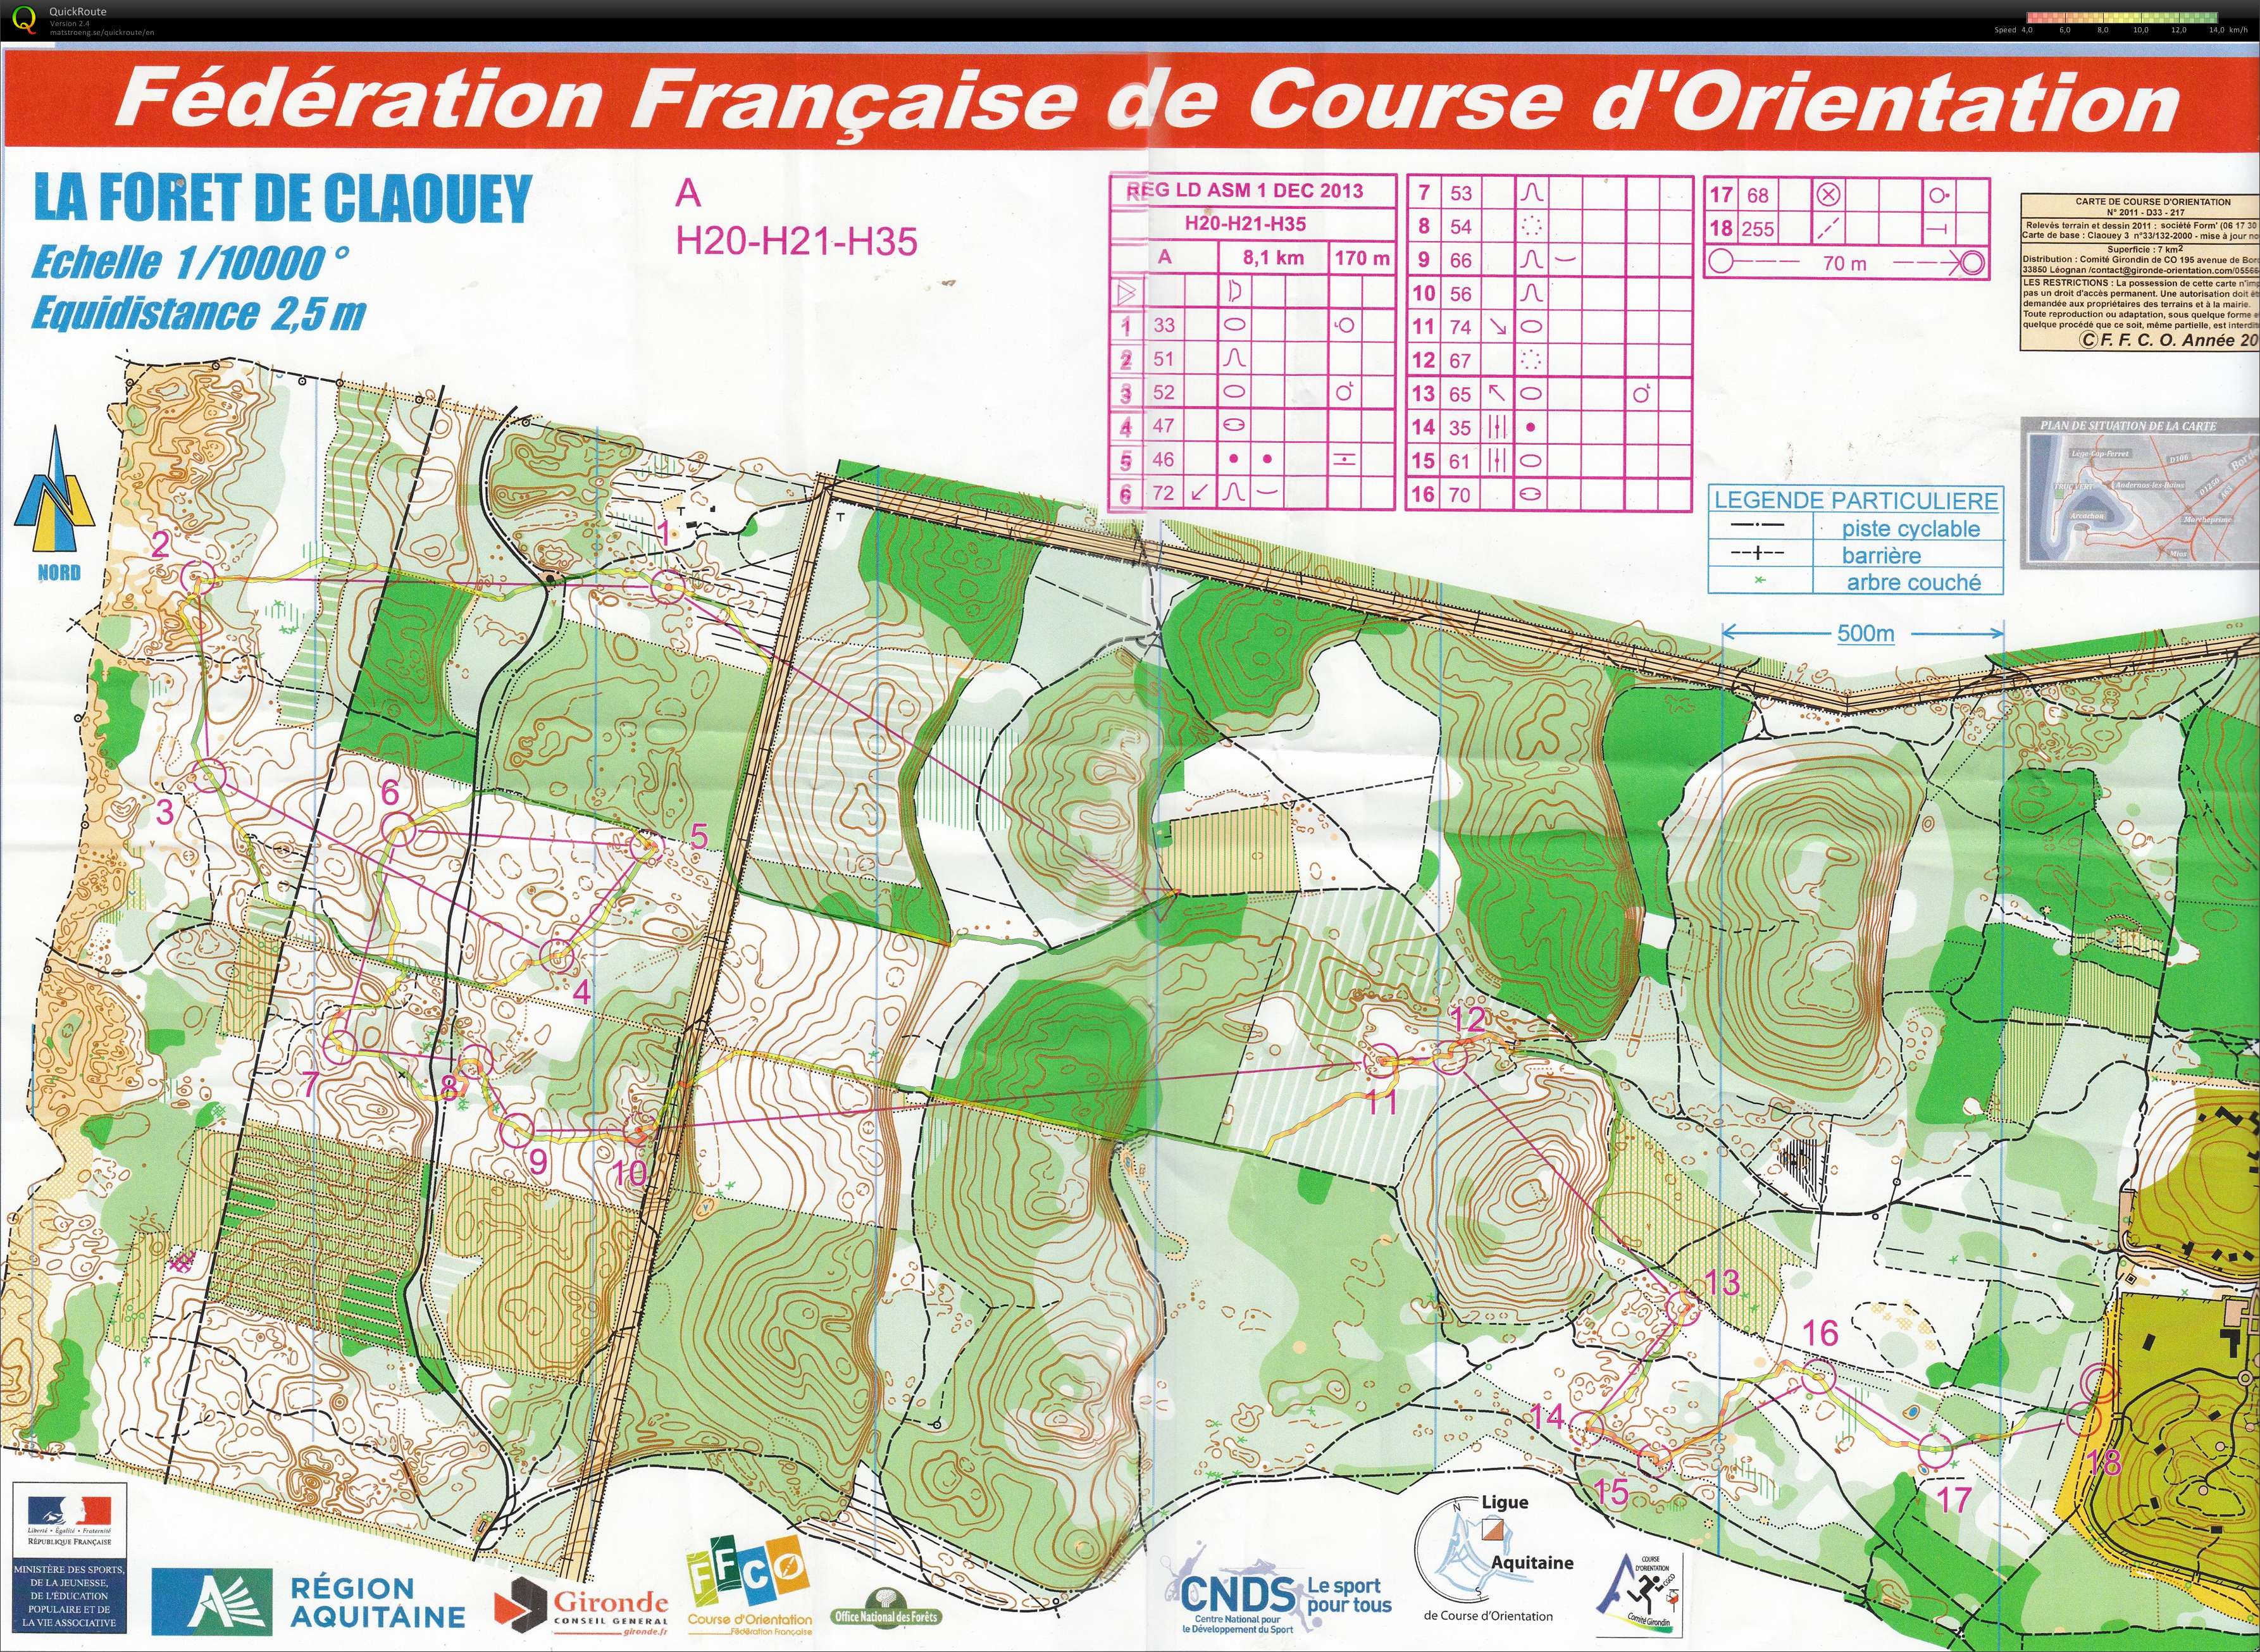 Régionale LD Aquitaine (01/12/2013)